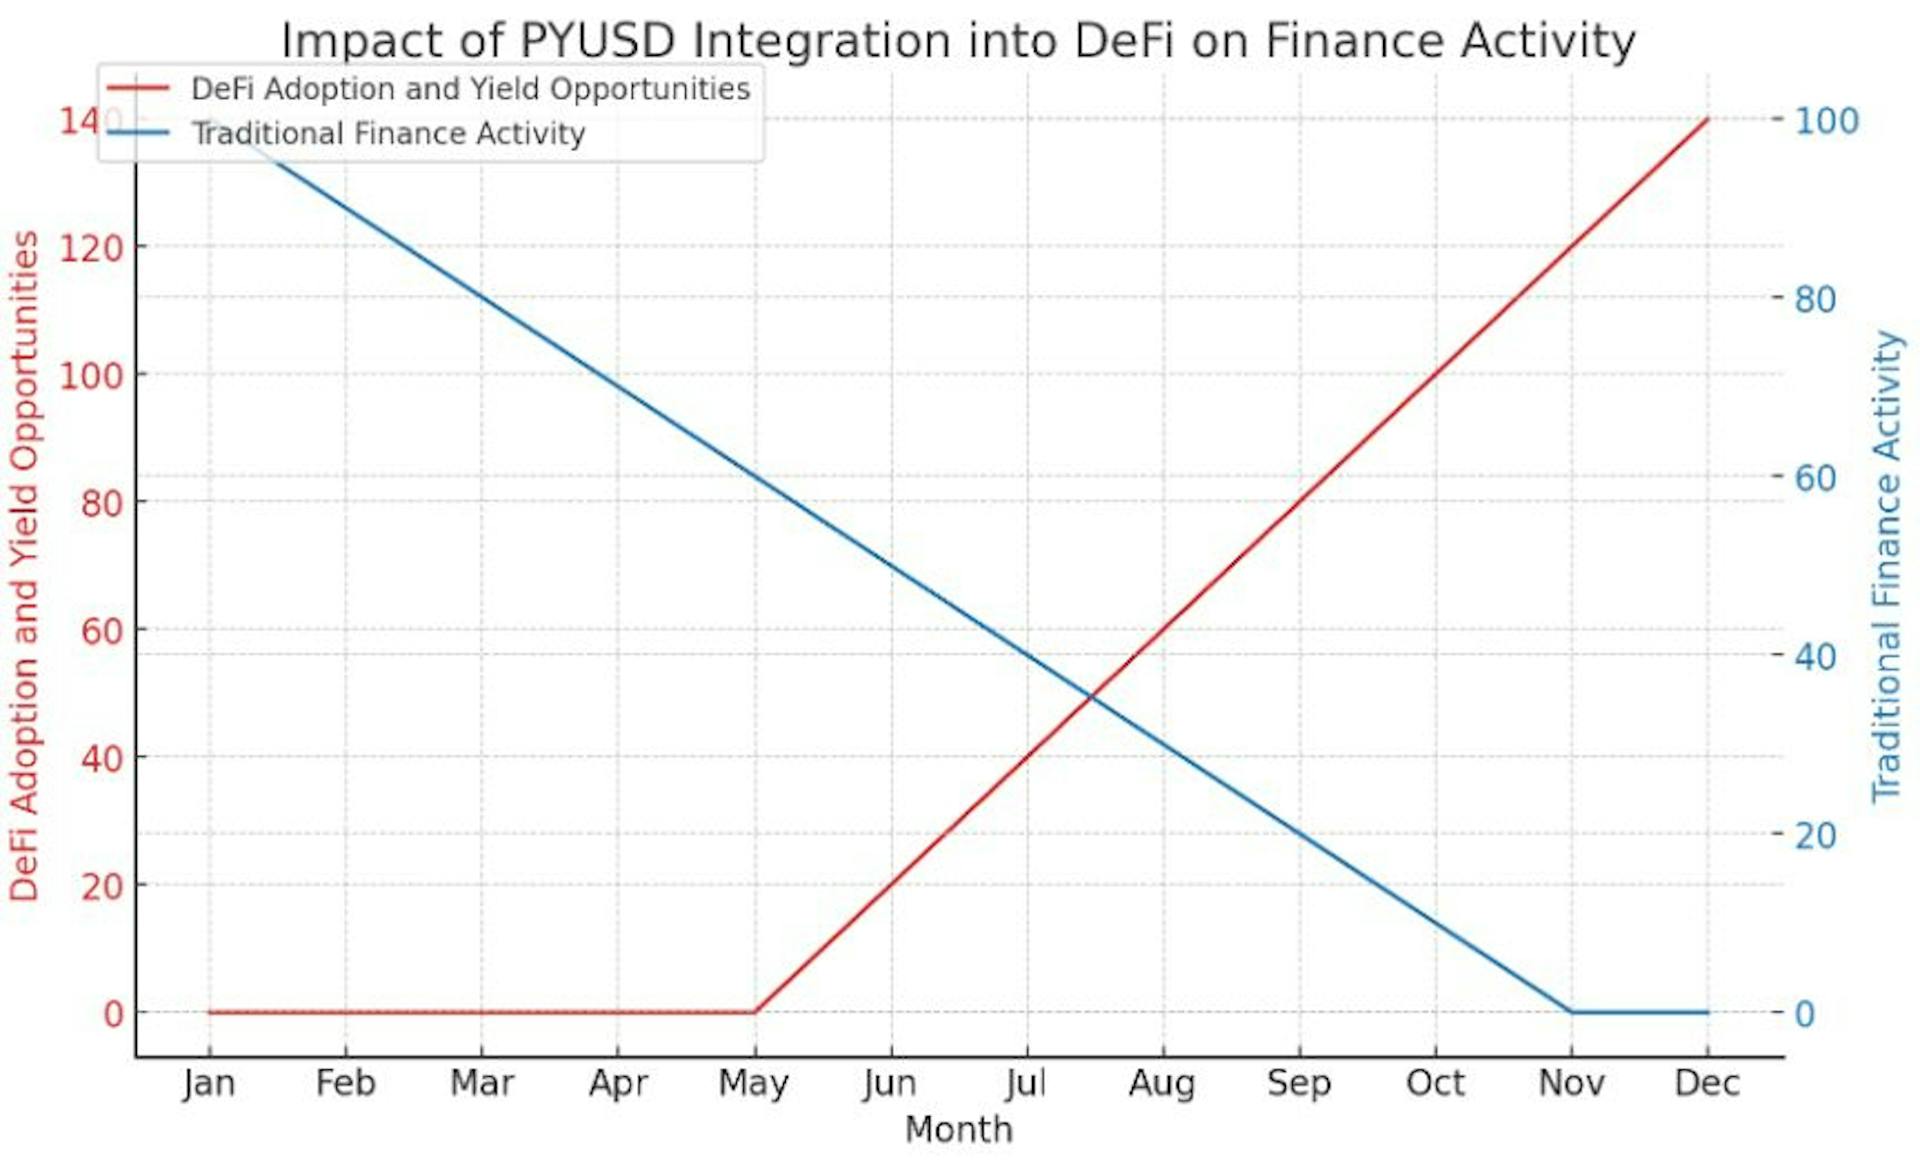 Диаграмма визуализирует гипотетическое влияние интеграции PYUSD в экосистему DeFi, демонстрируя значительный рост внедрения DeFi и возможностей получения прибыли с течением времени.